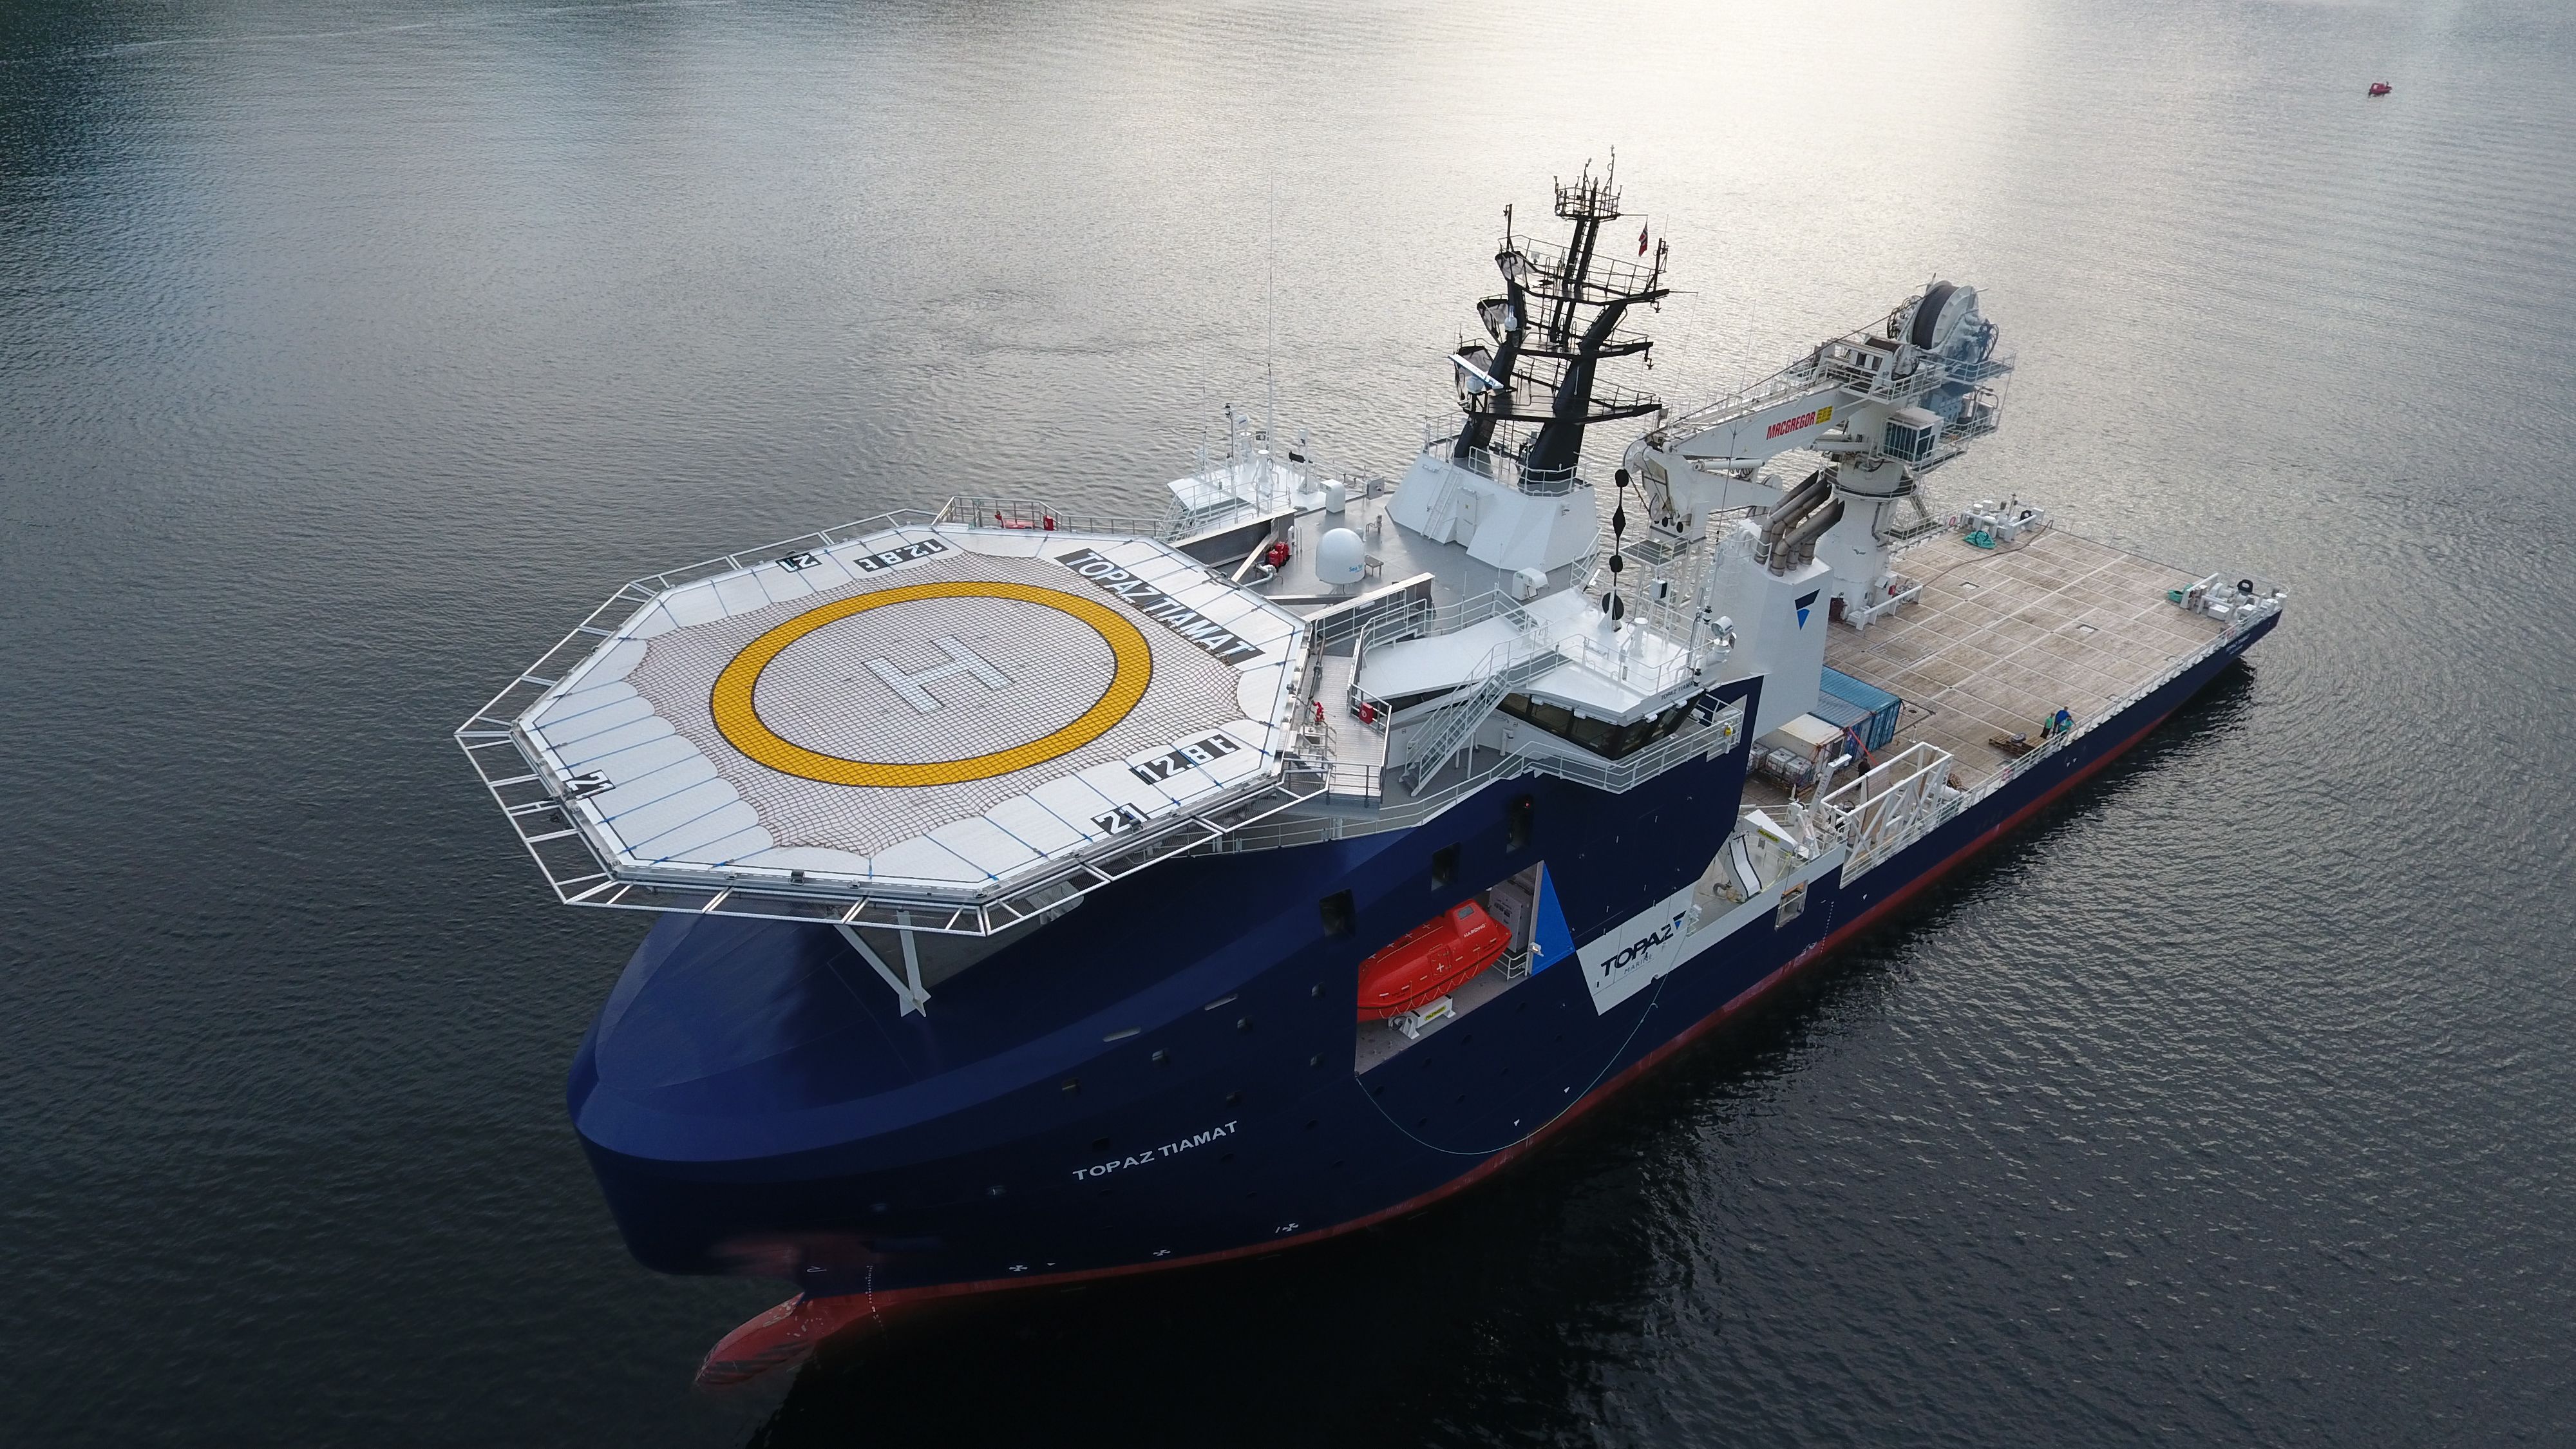 MV Topaz Tangaroa has been converted to a Multi-Role Ocean Surveillance ship